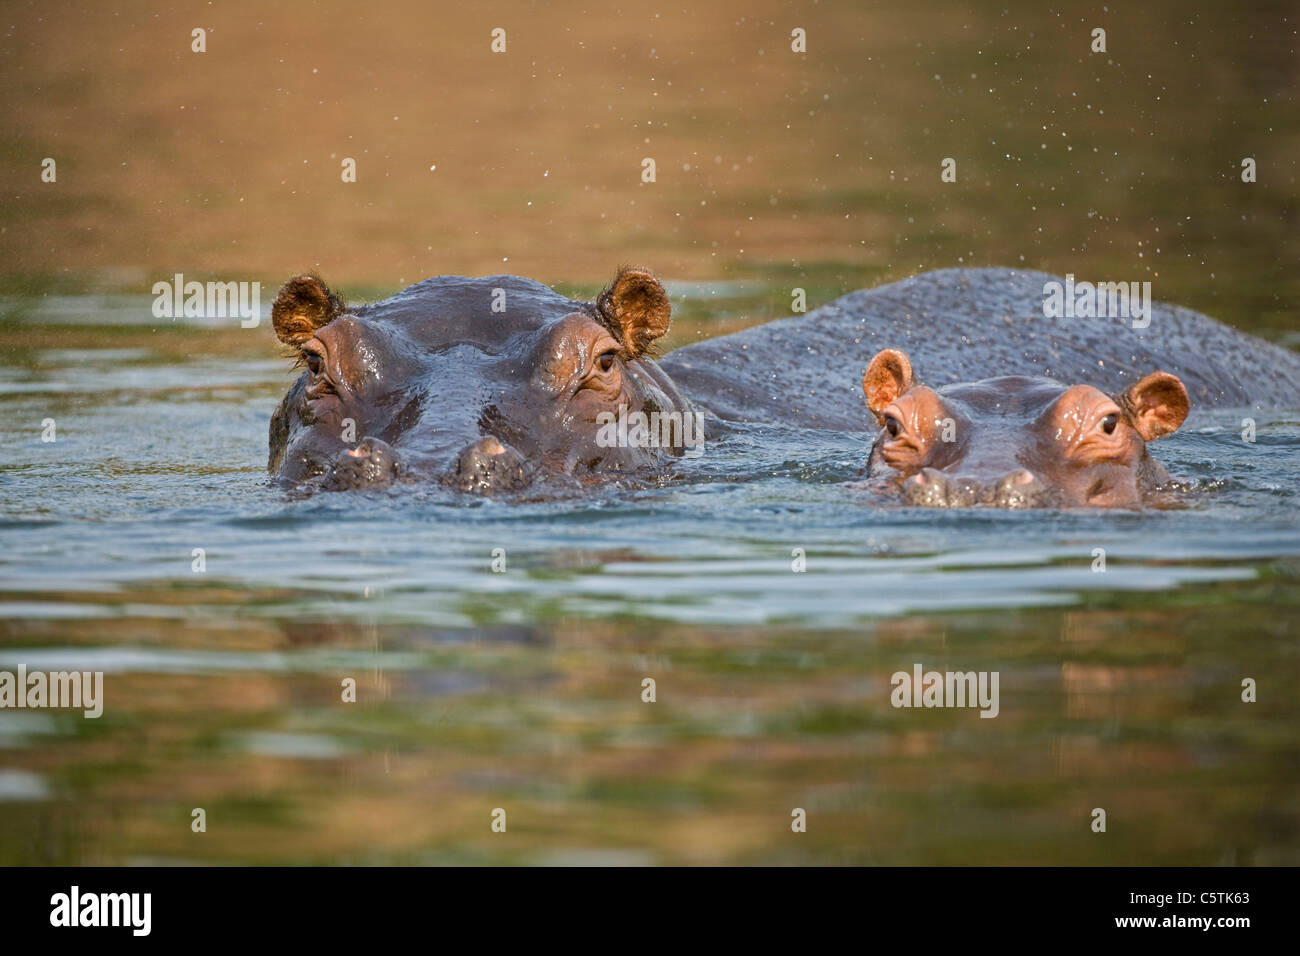 L'Afrique, Botswana, hippopotames (Hippopotamus amphibius) dans de l'eau Banque D'Images